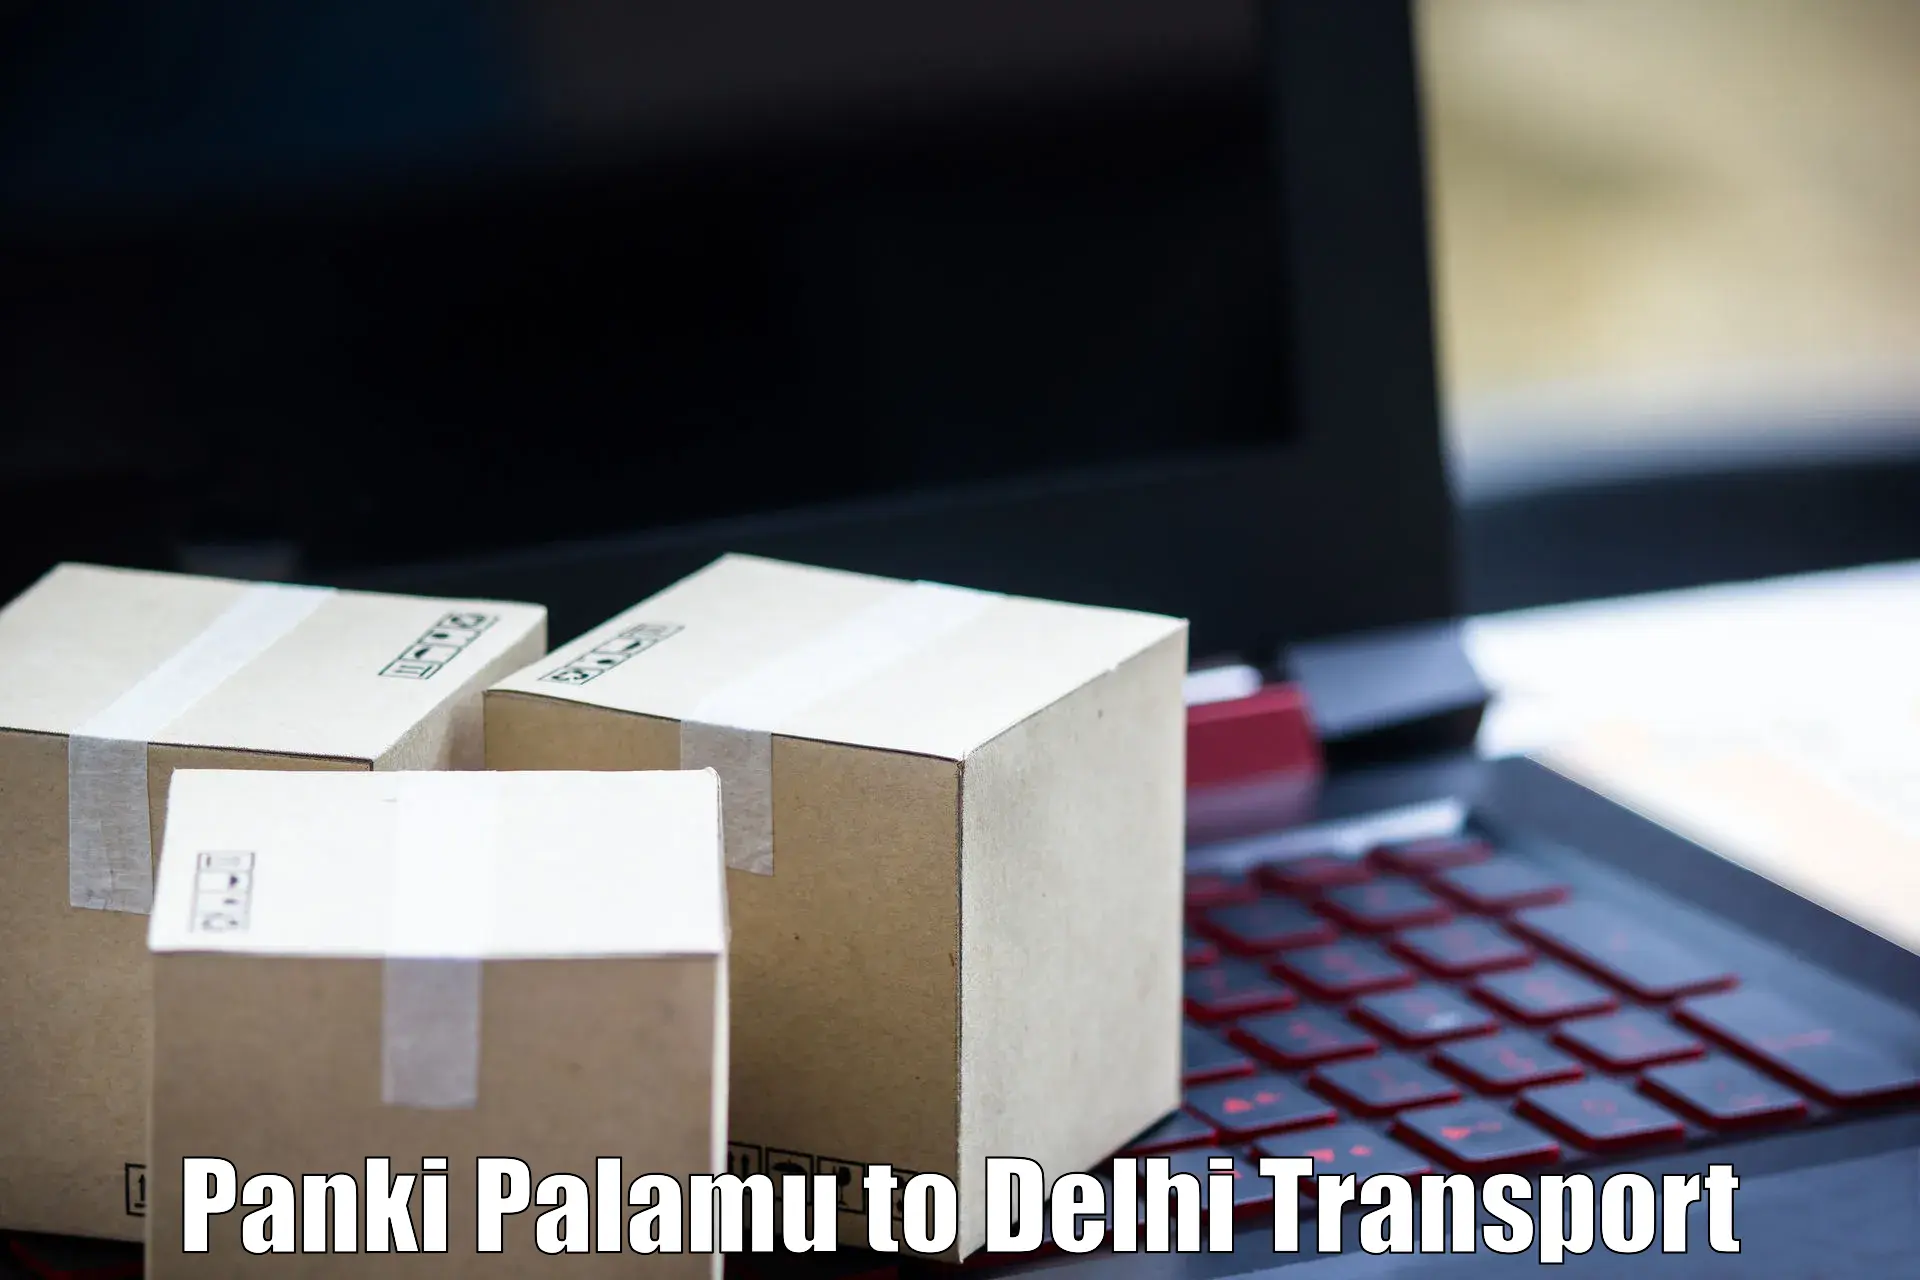 Daily parcel service transport Panki Palamu to Krishna Nagar